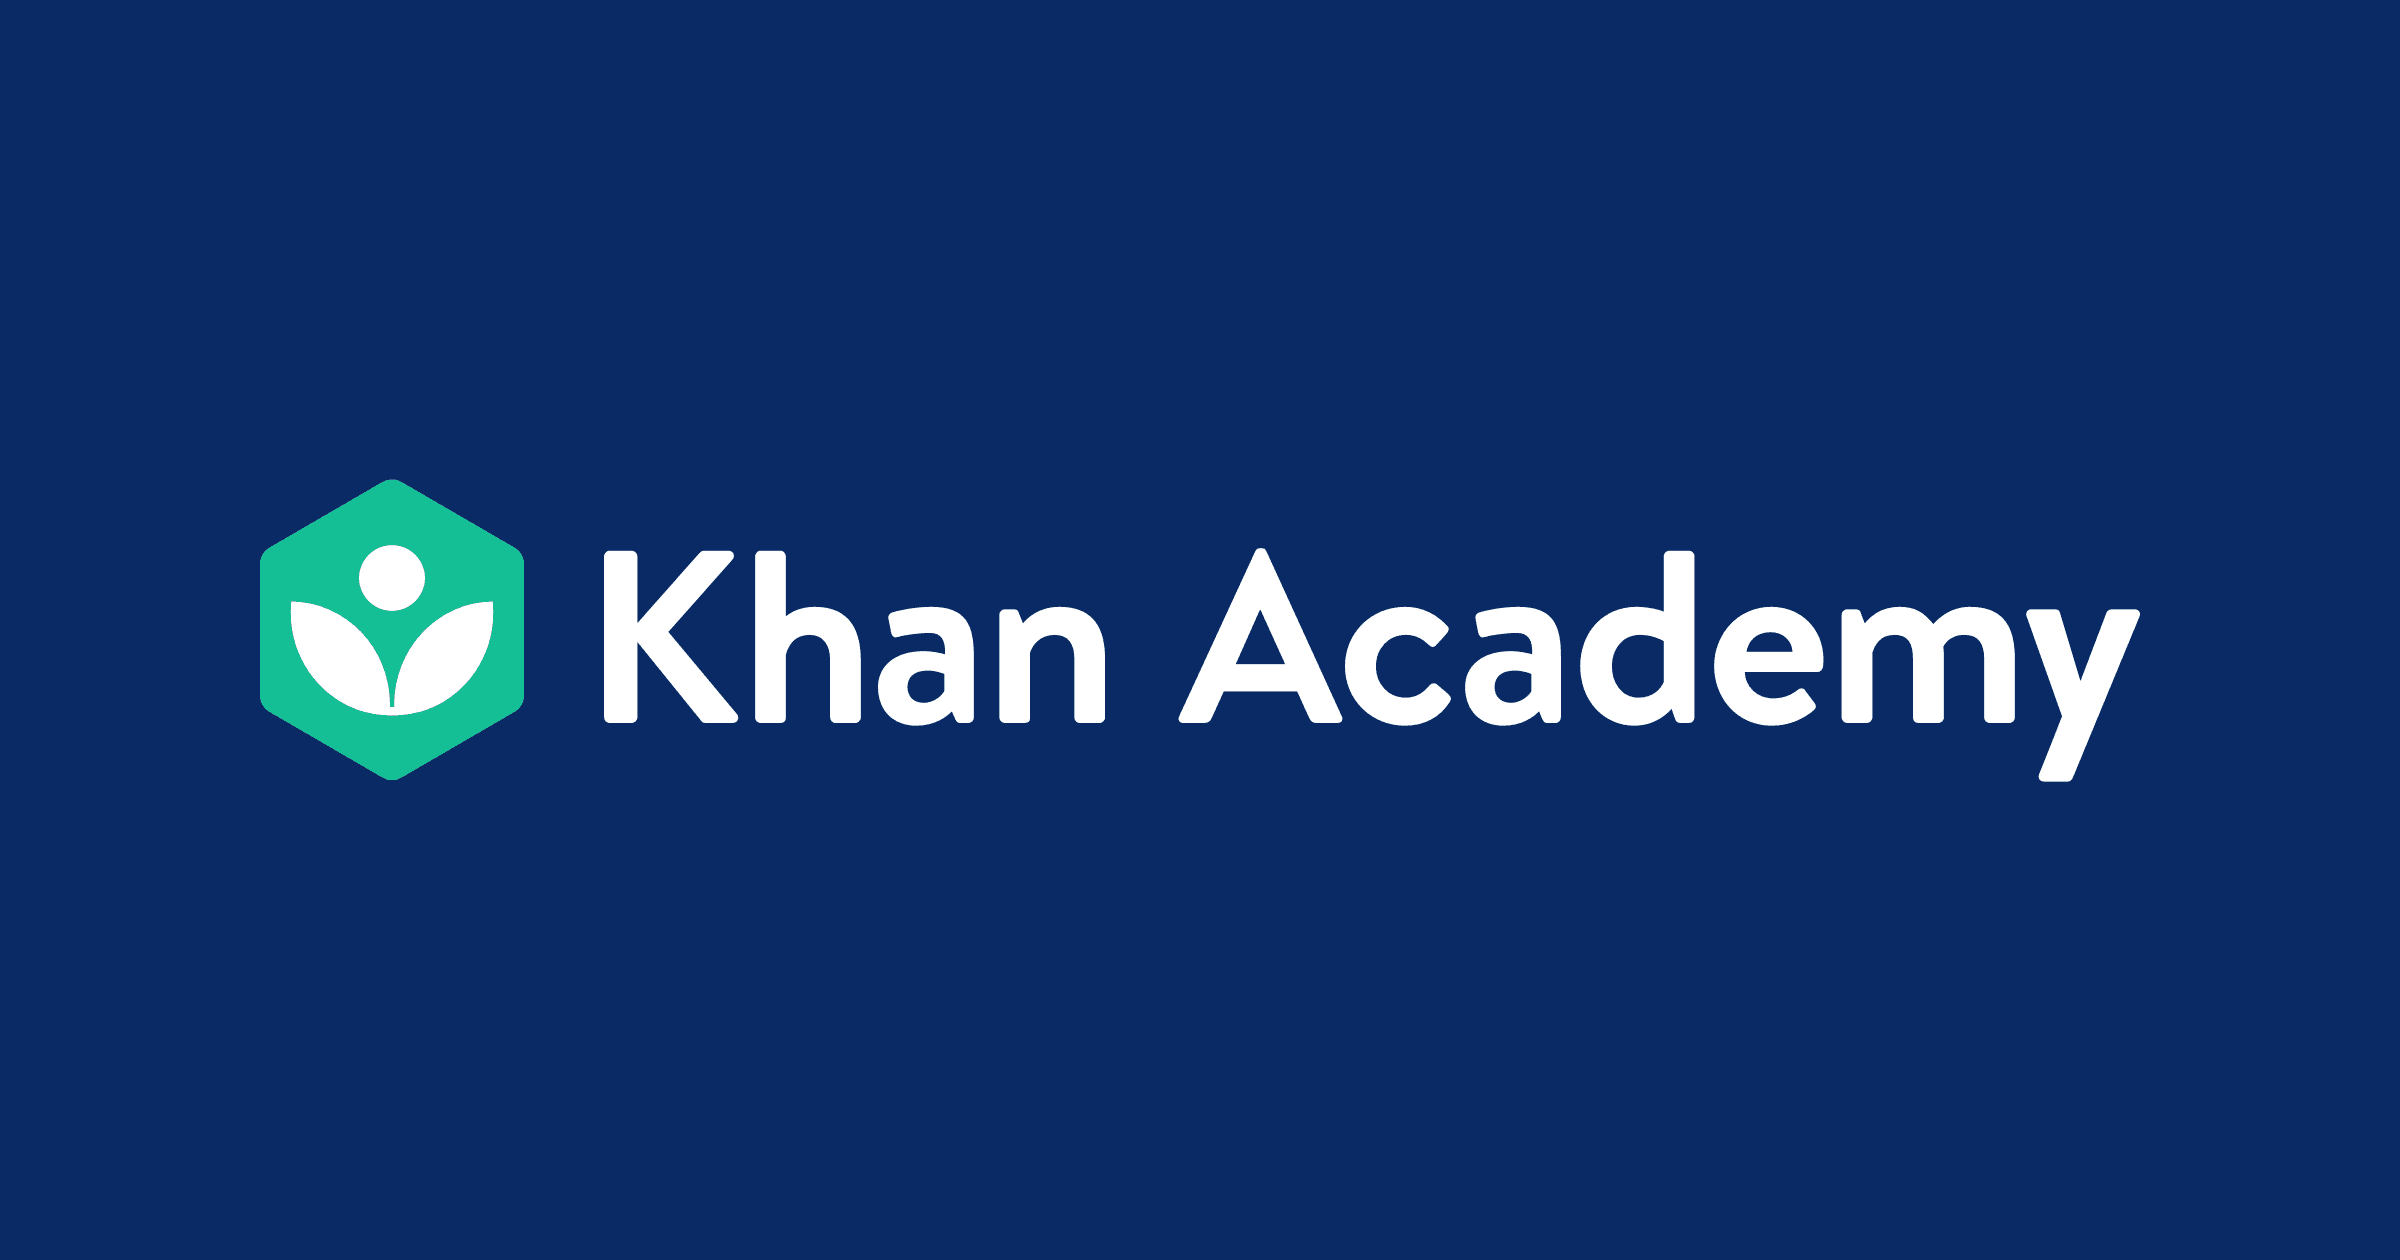 Khan homework help